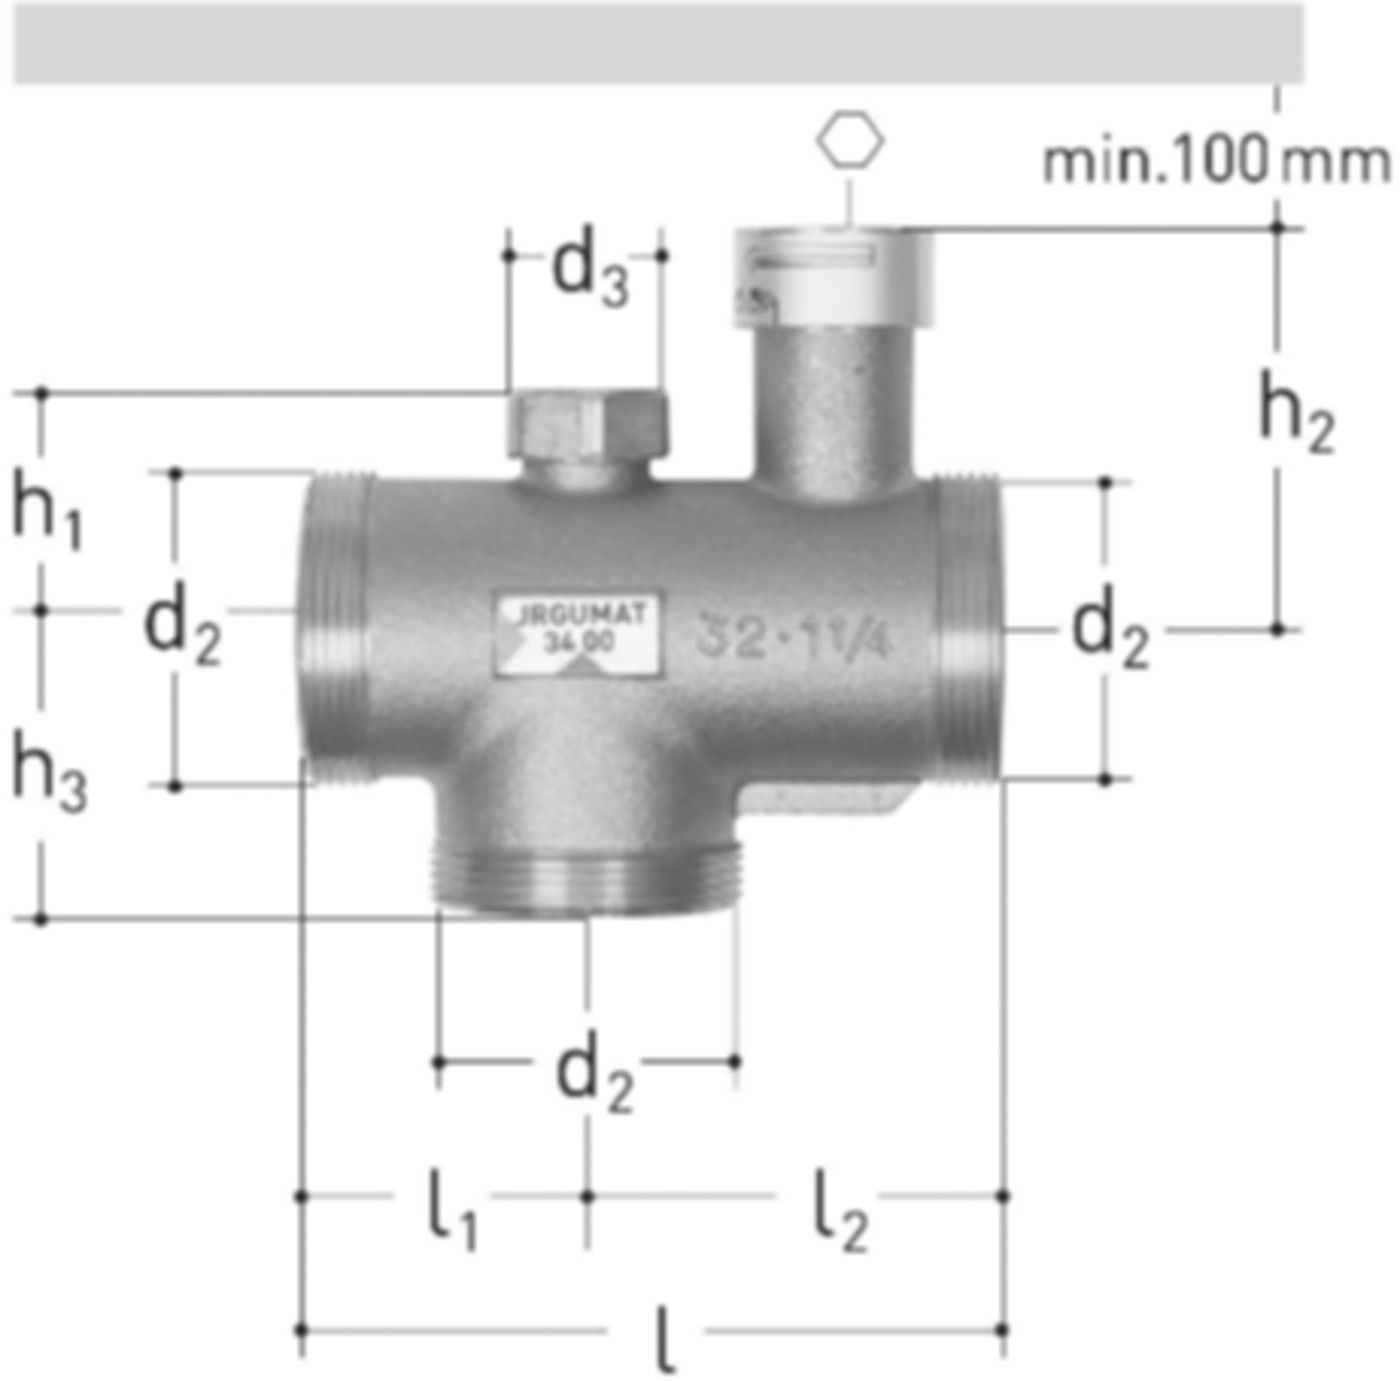 JRGUMAT Thermomischer PN 10 3/4" DN 20 55°C 3400.926 - JRG Armaturen